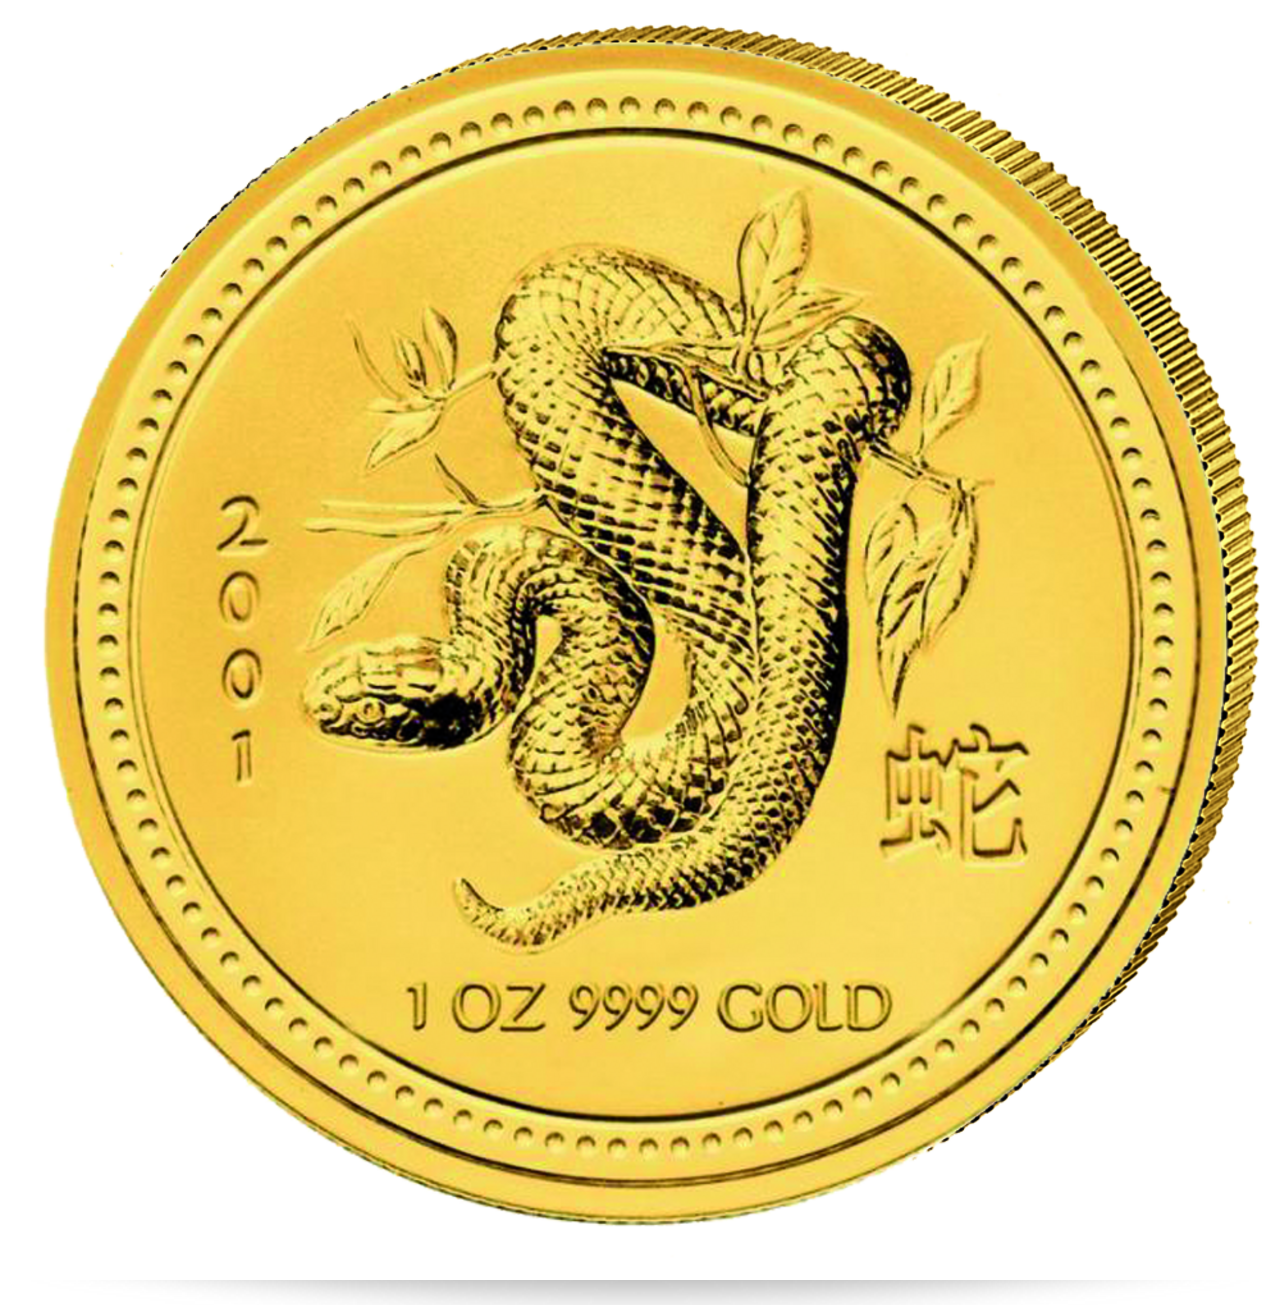 Die Lunar Serie der Royal Asutralian Mint ist ein echter Klassike runter den Goldanlagemünzen